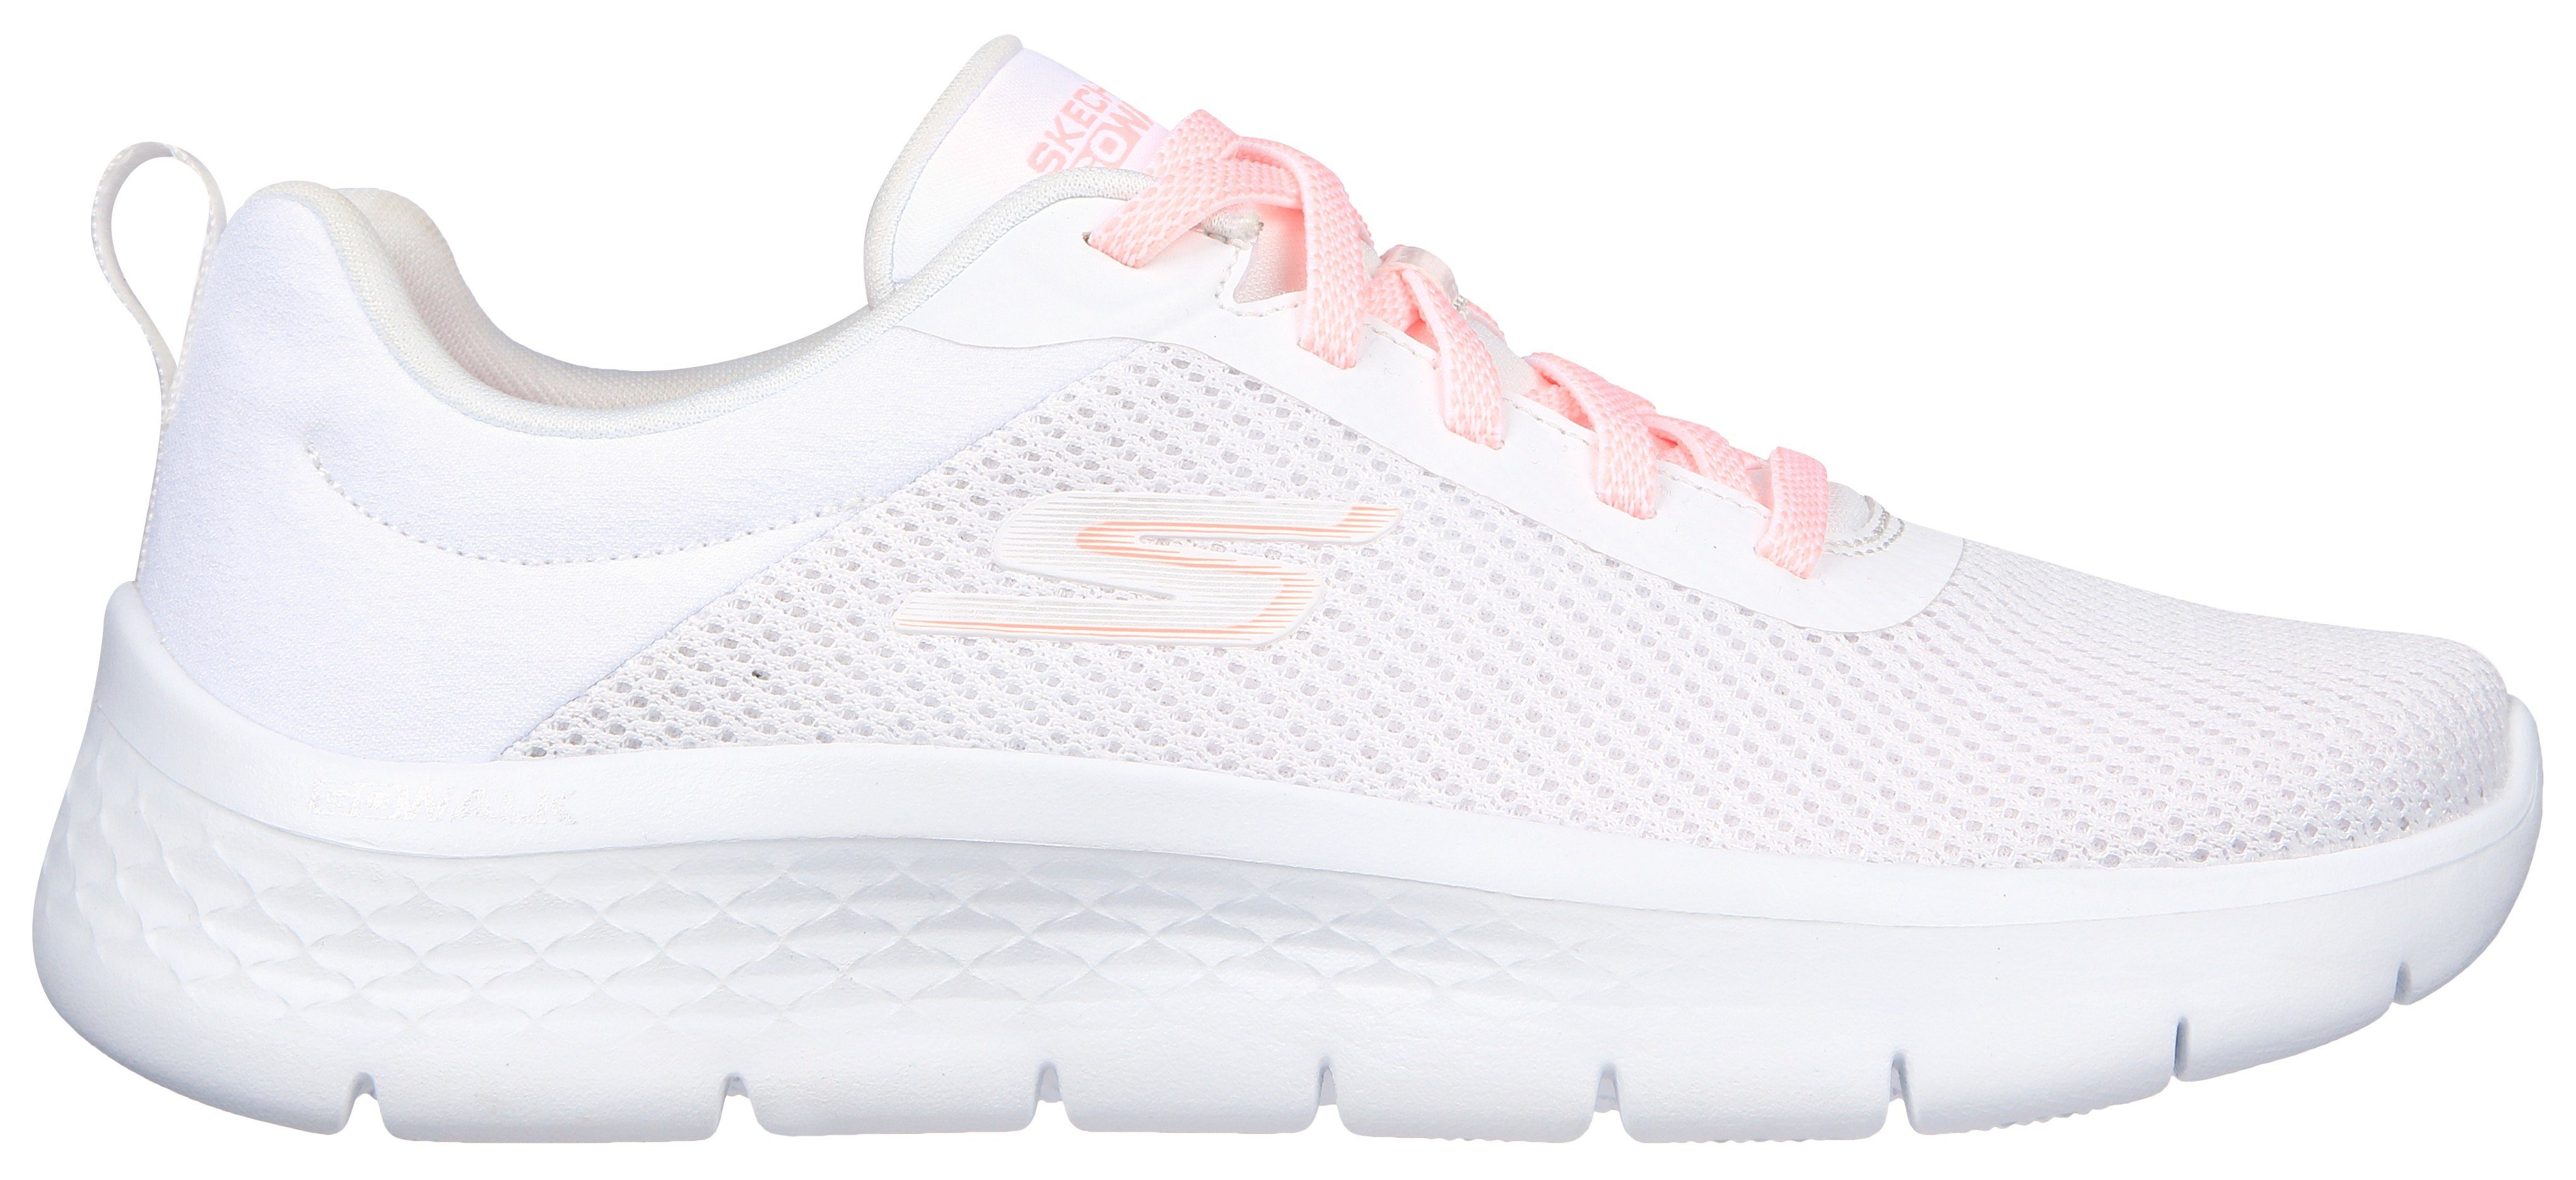 Skechers GO WALK FLEX ALANI Sneaker Maschinenwäsche geeignet weiß-rosa für Slip-On